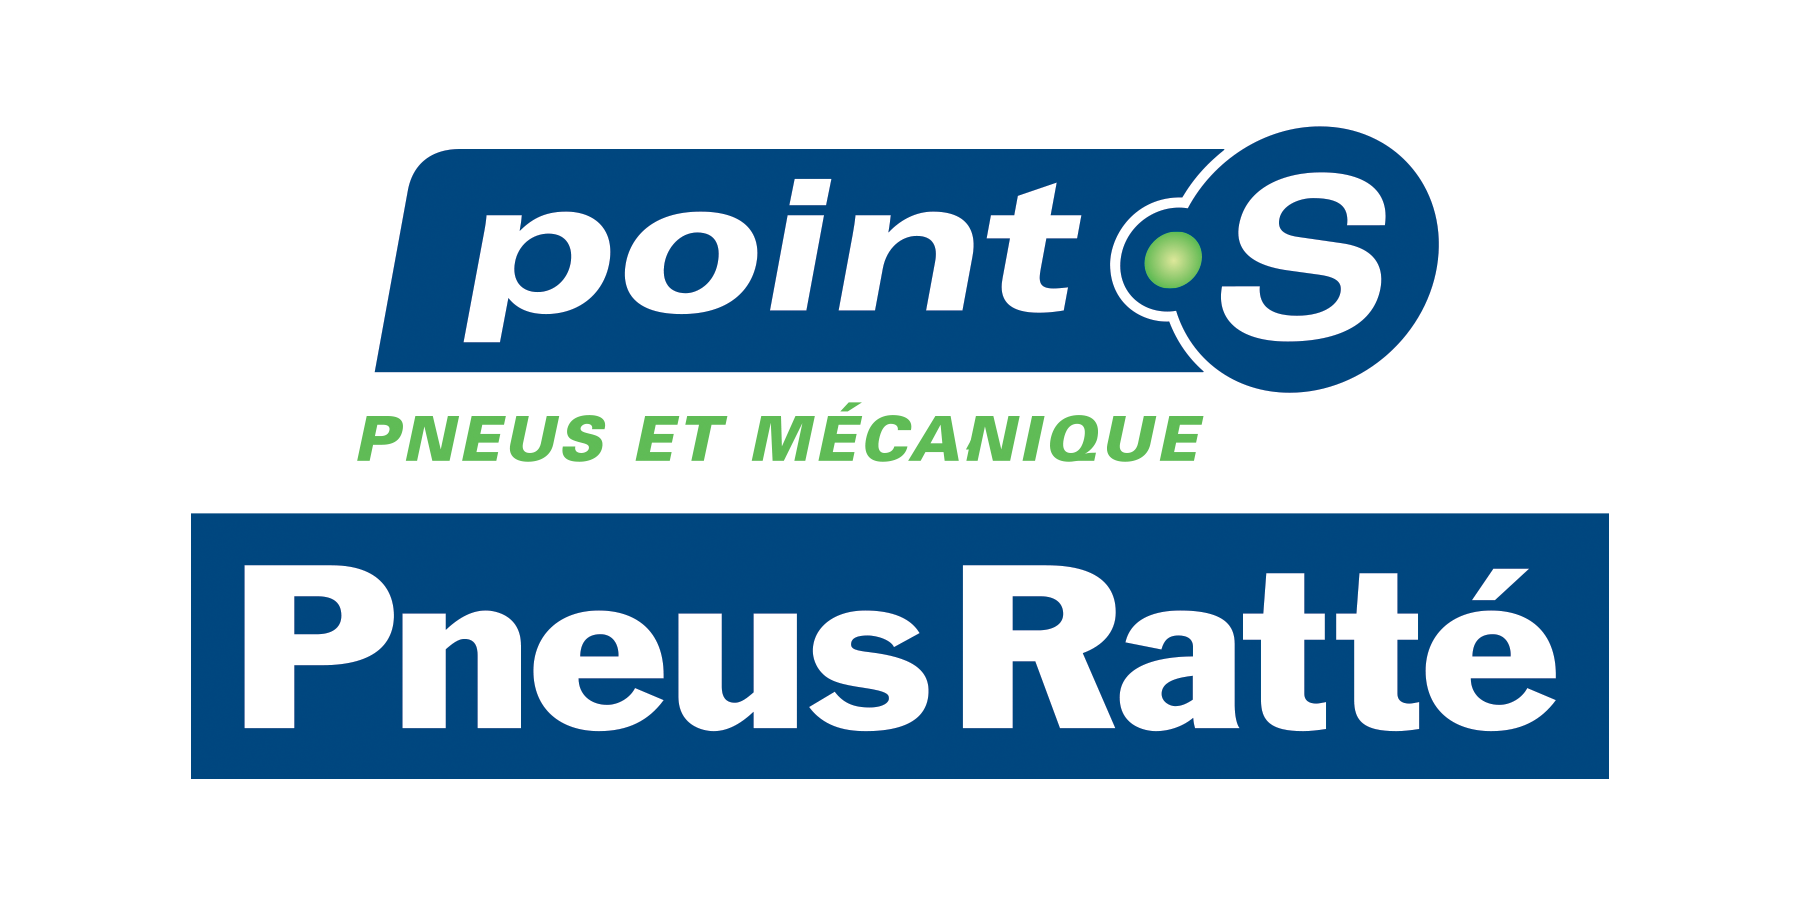 PneusRatte_PointS_Logo_V_RGB